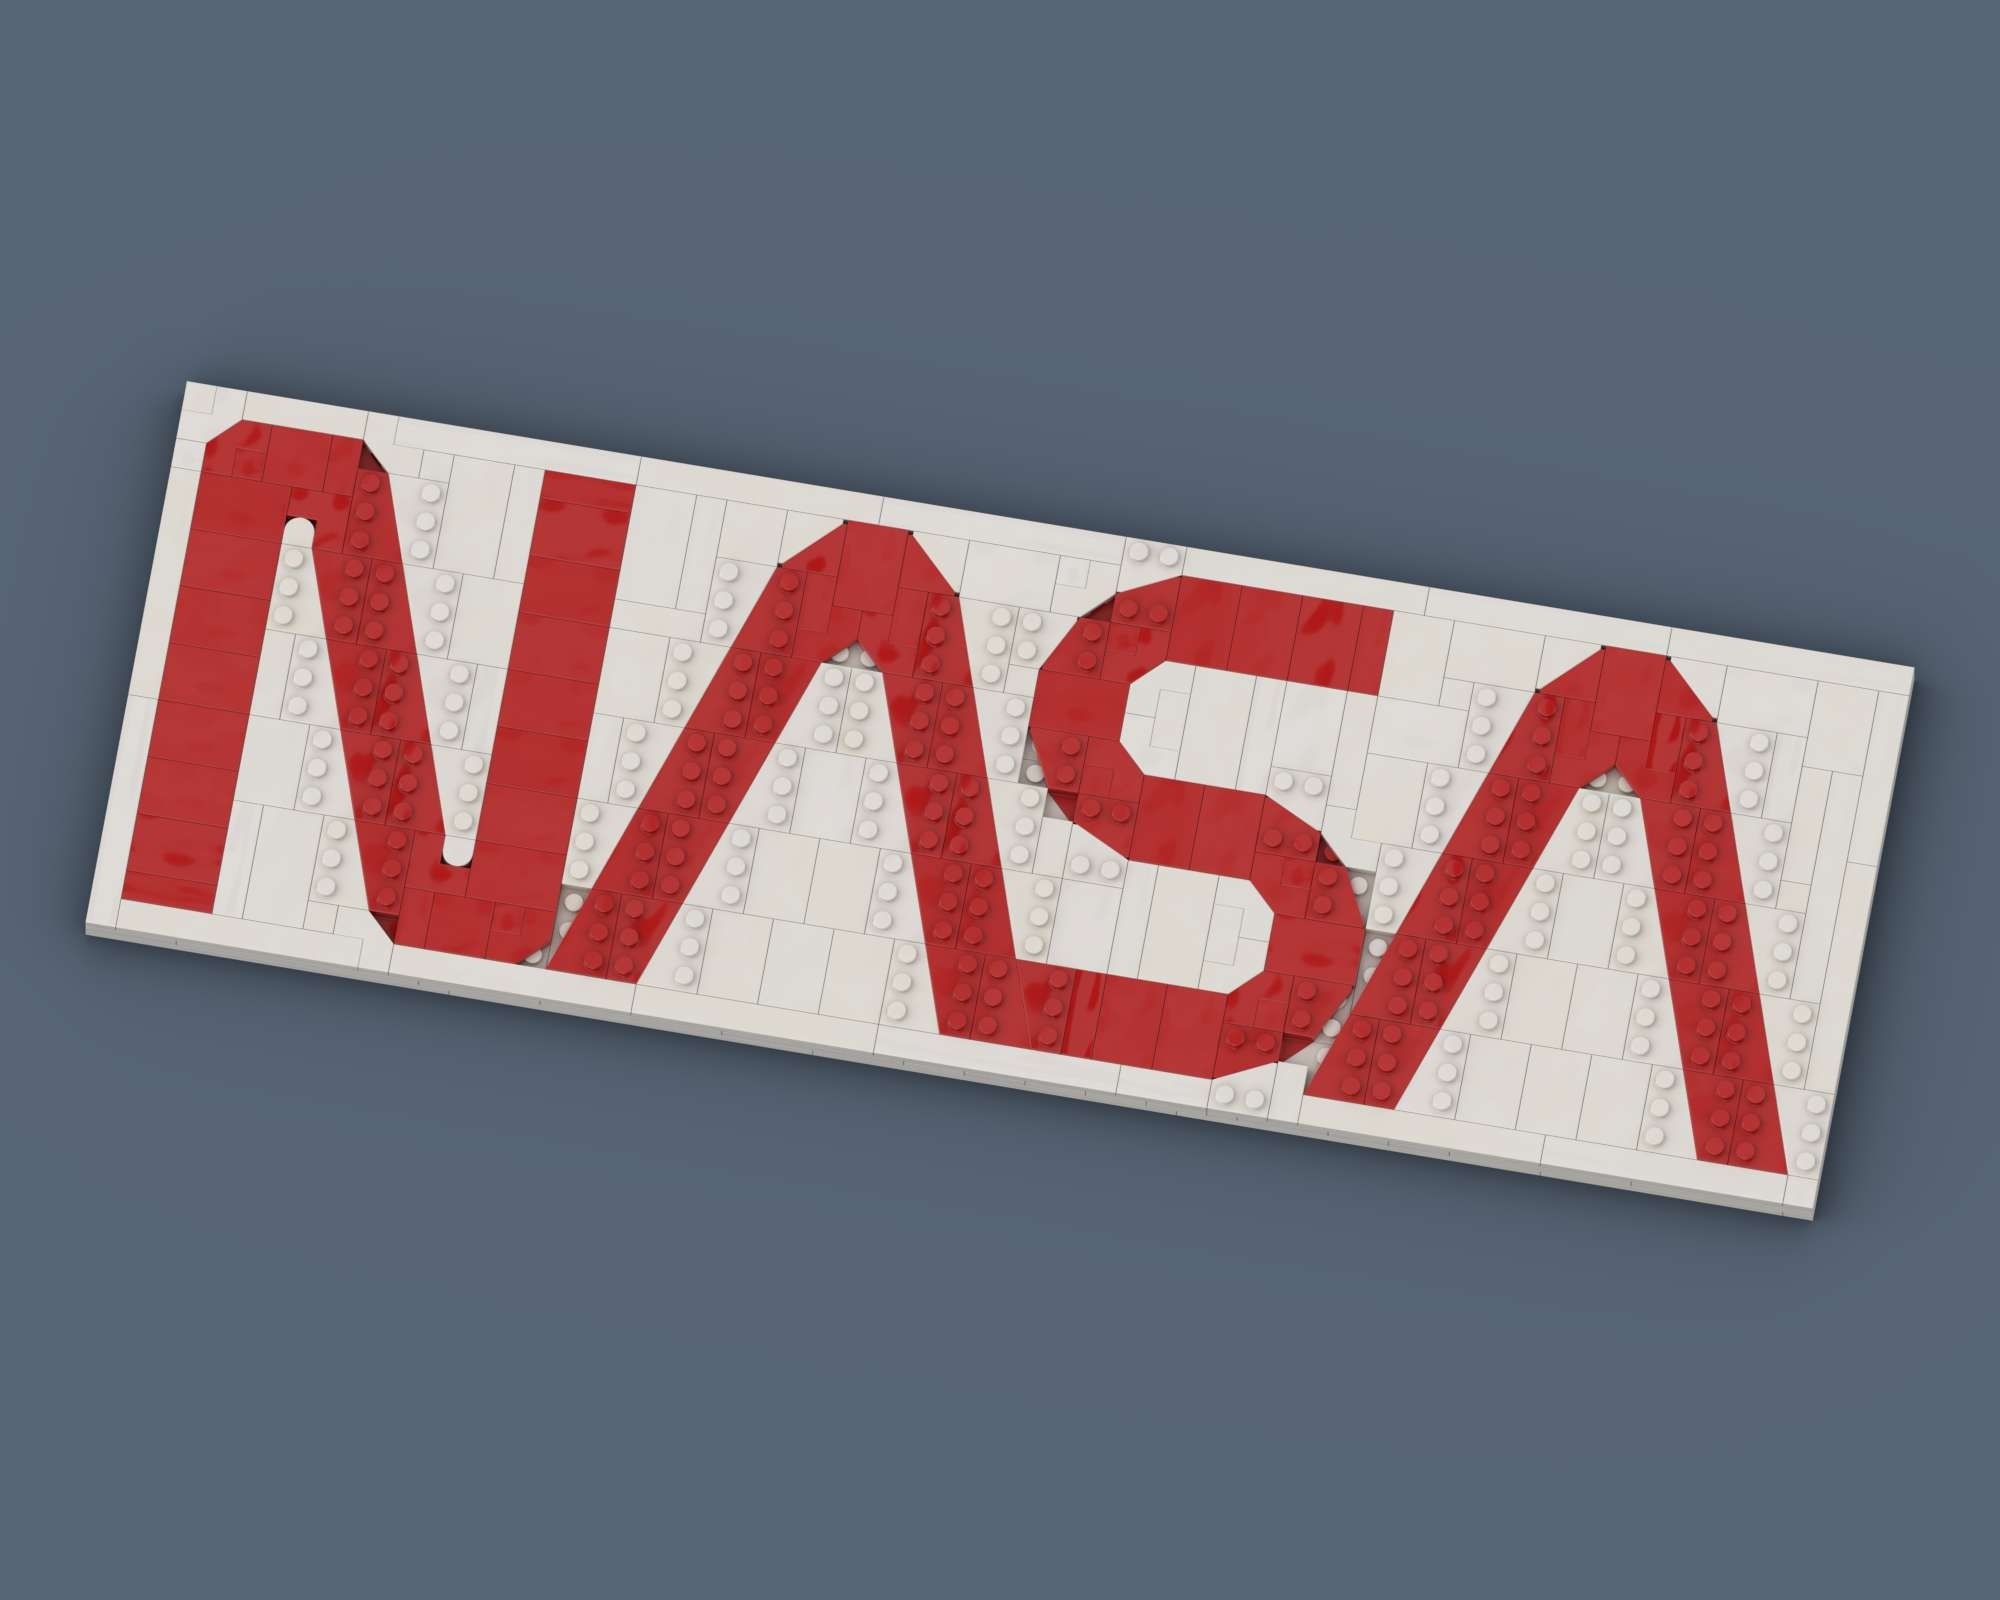 NASA Worm Logo